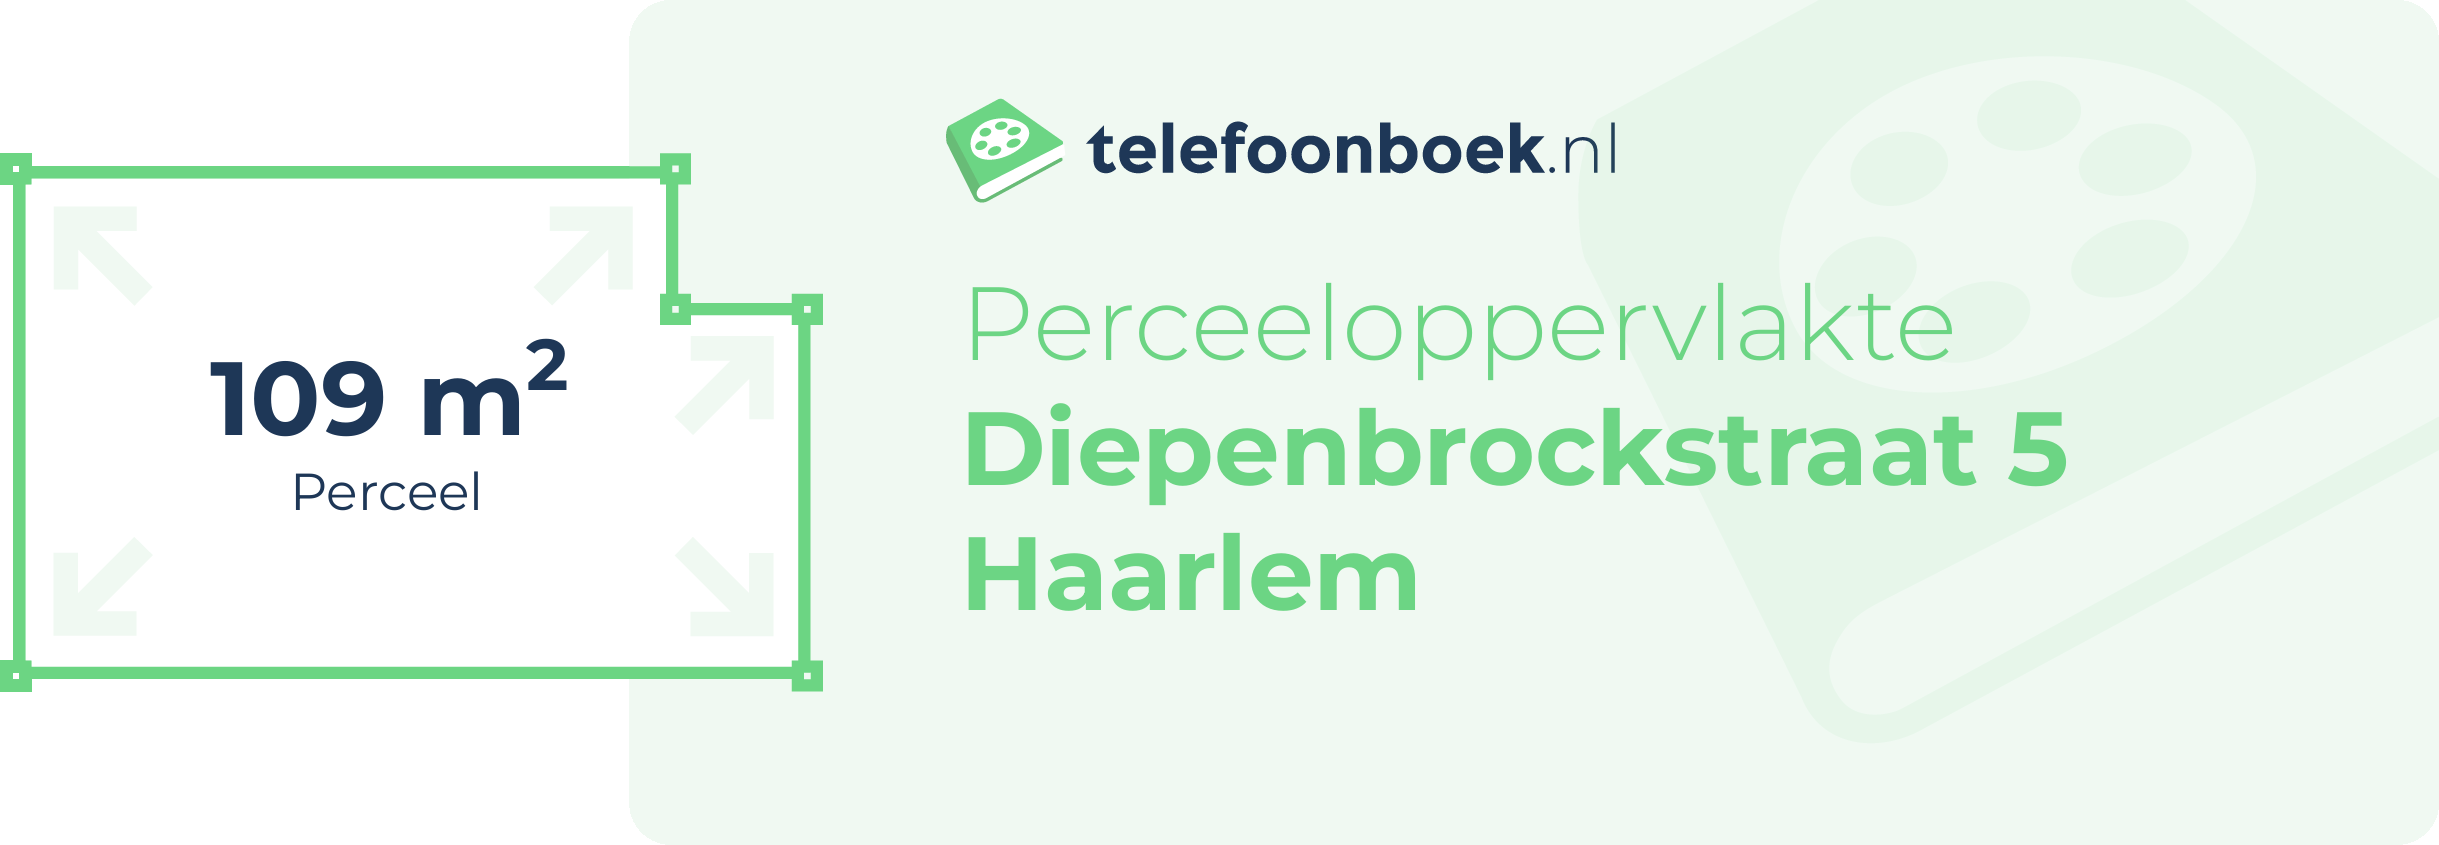 Perceeloppervlakte Diepenbrockstraat 5 Haarlem